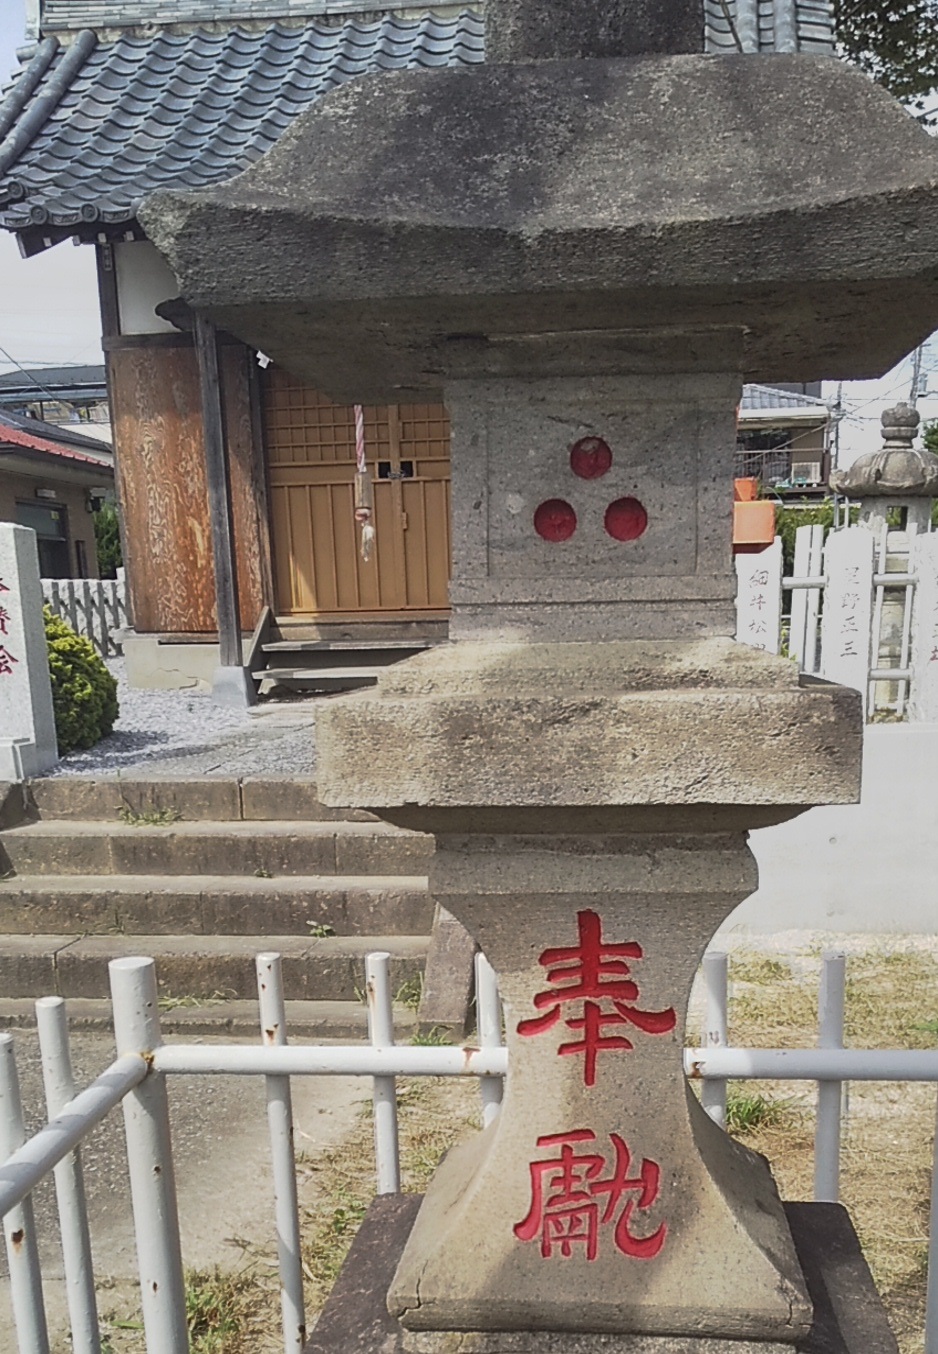 谷塚上町 神明神社の三つ穴灯篭 鳥居を背にして右